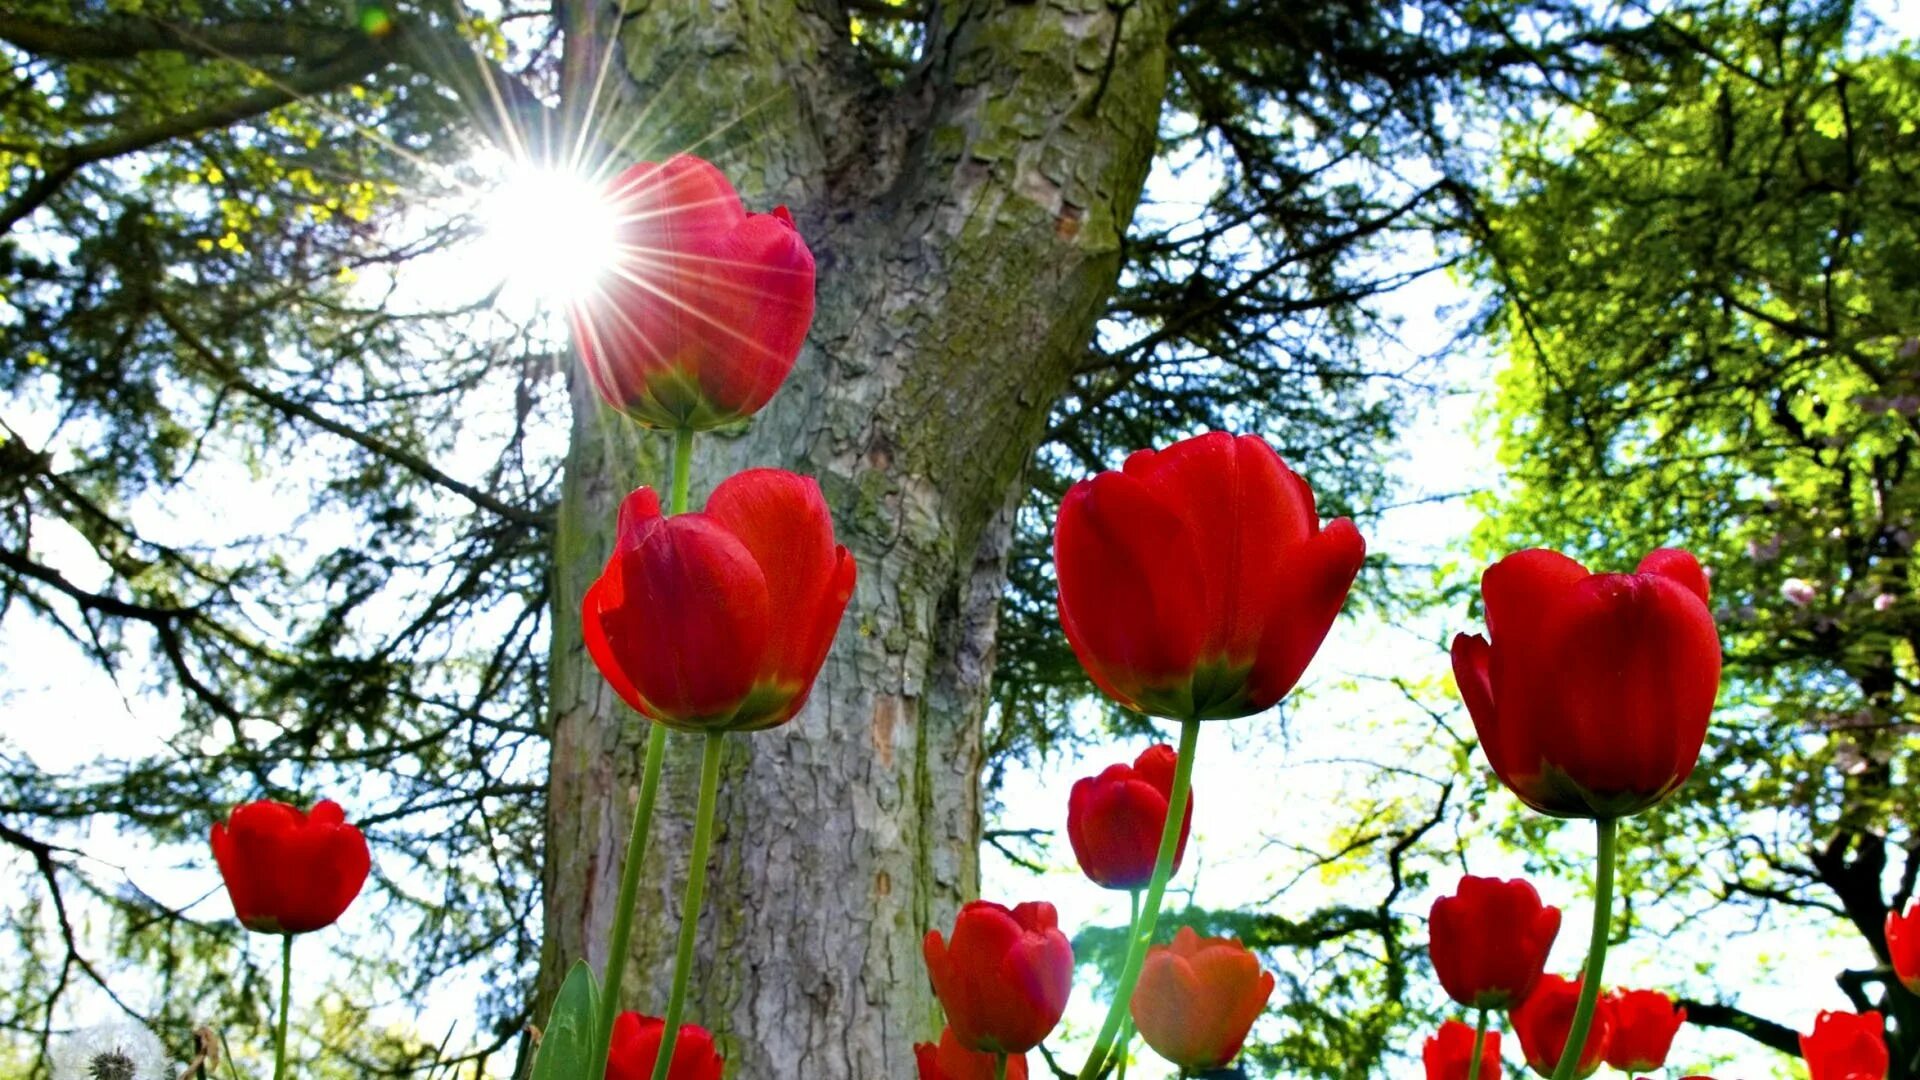 Обои на телефон природа вертикальные высокого качества. Красные тюльпаны. Тюльпаны в природе. Природа цветы вертикальные.